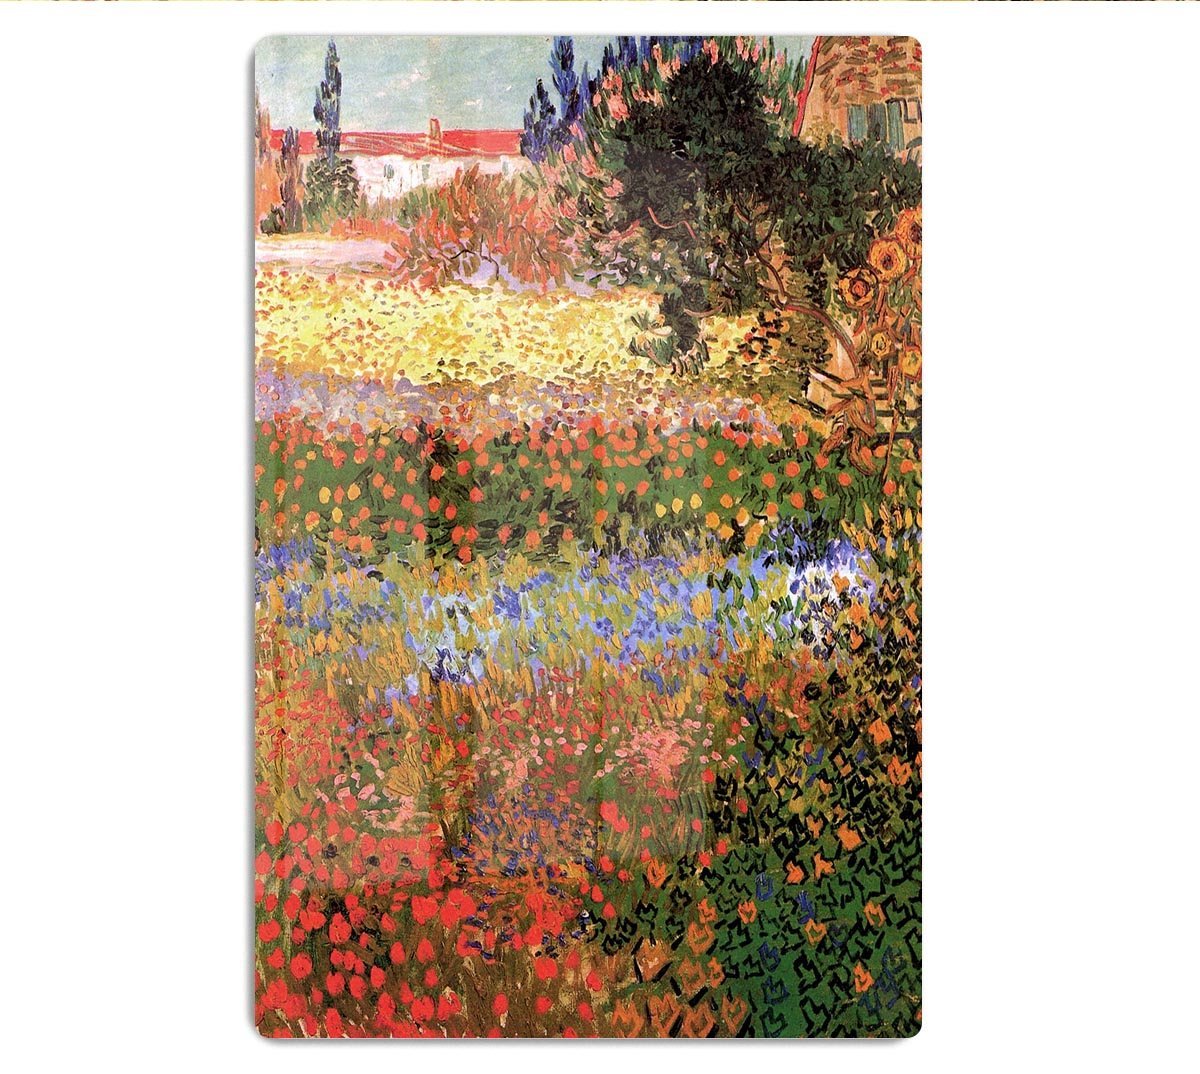 Flowering Garden by Van Gogh HD Metal Print